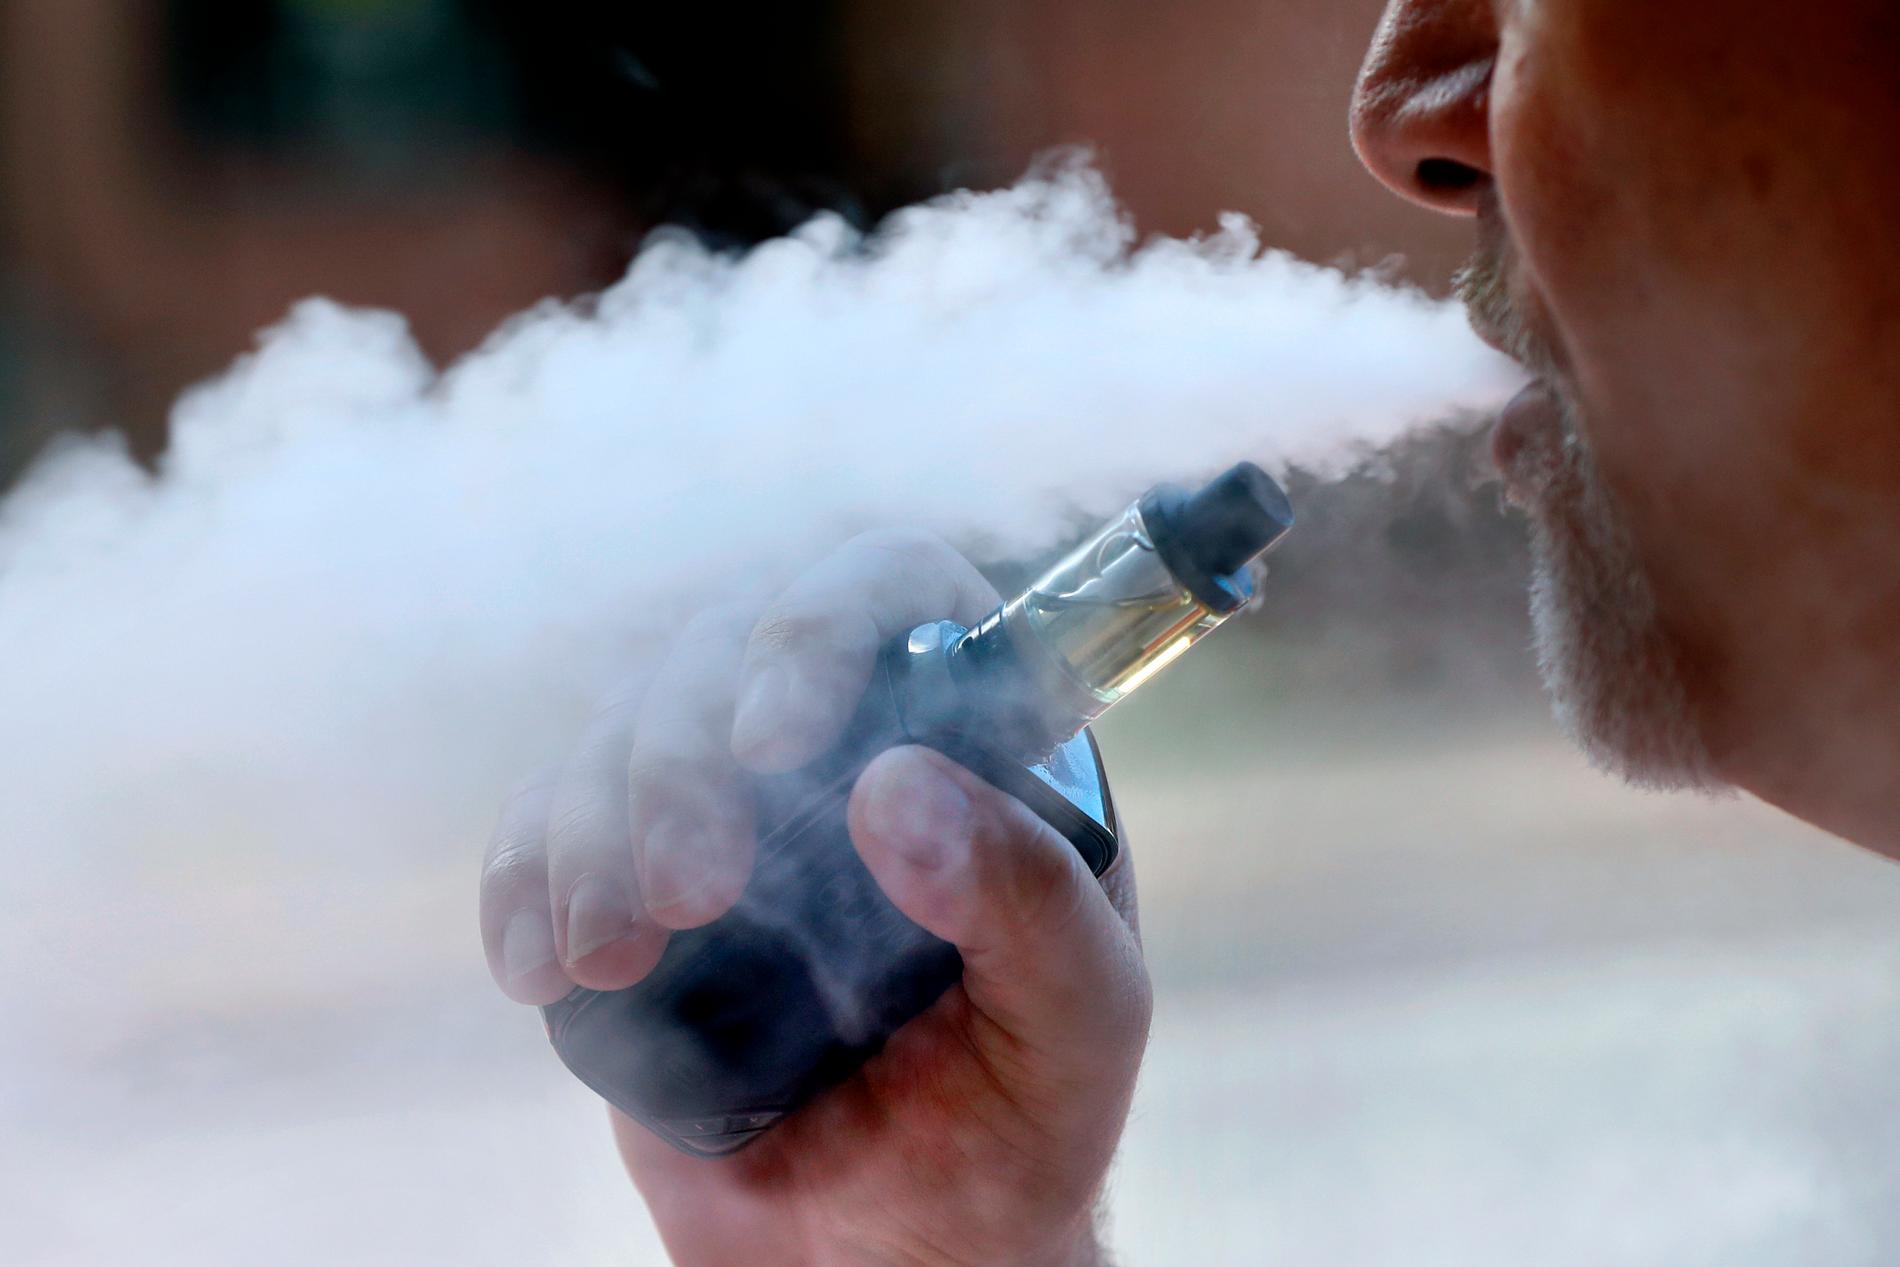 Två fall av misstänkt av skada i samband med e-cigaretter har upptäckts i Sverige.